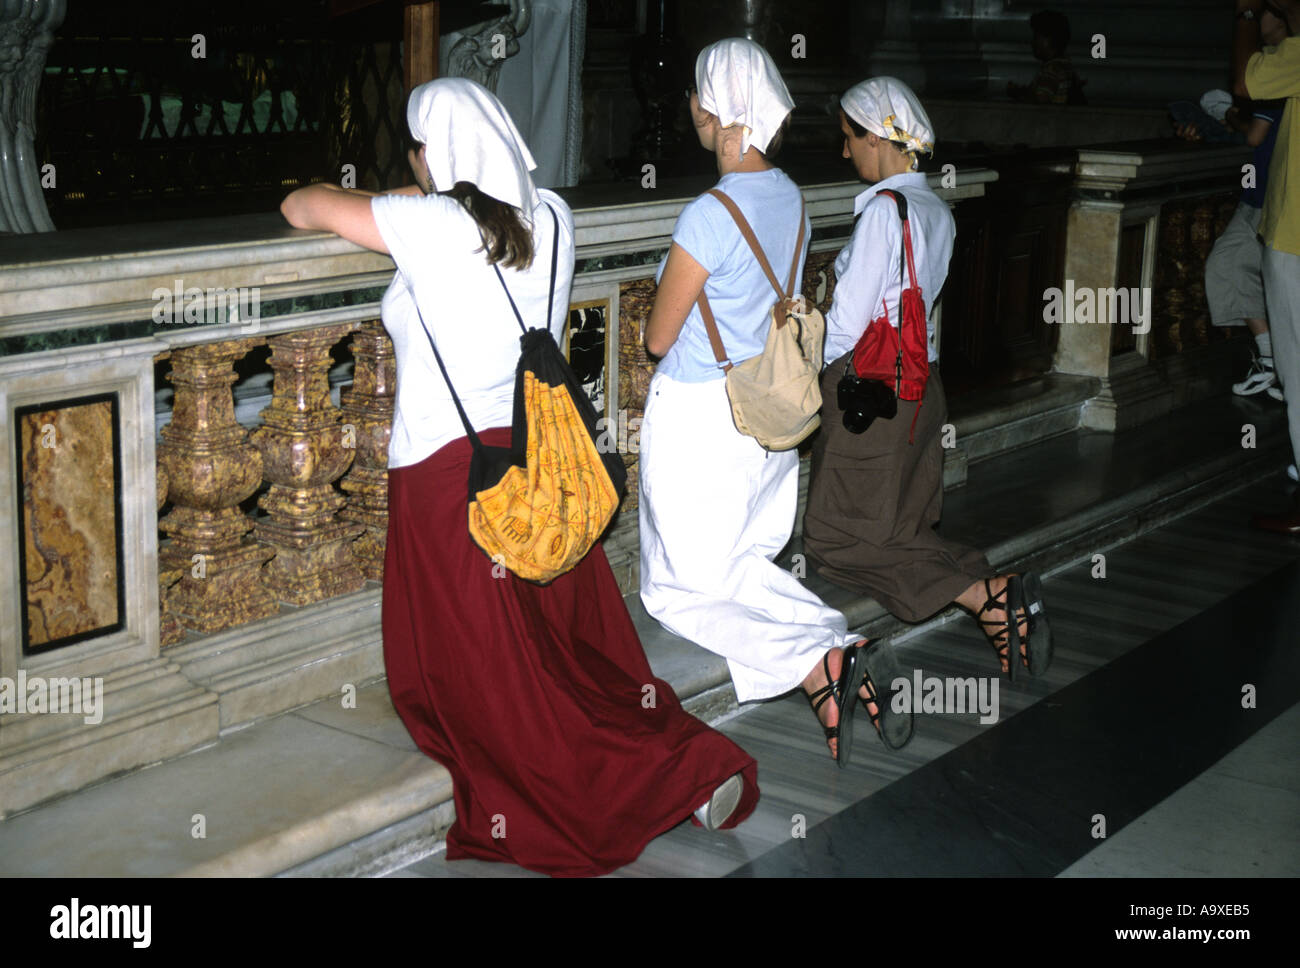 Trois femmes s'agenouiller en prière dans la Basilique St Pierre Rome Italie Banque D'Images